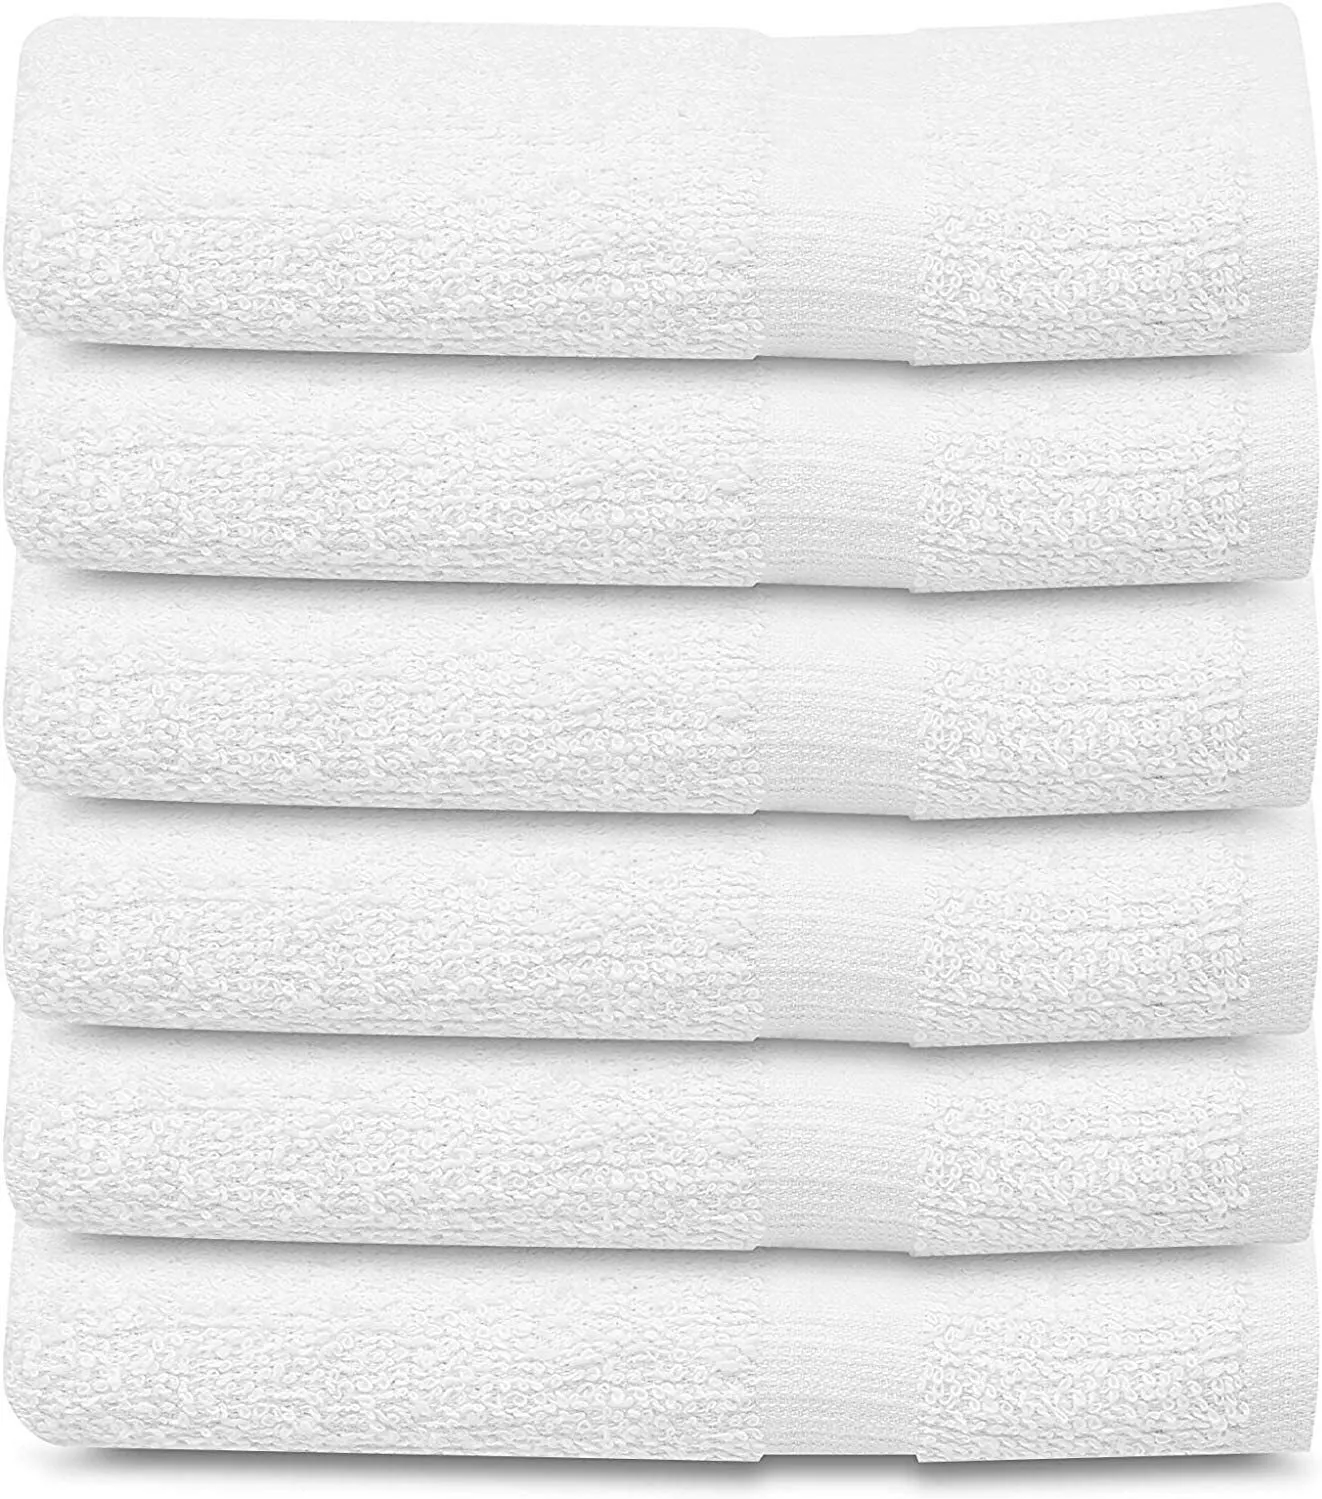 Bath Towels 6 Pack &quot;22x44&quot; White Cotton Towel Set Bath Pool Gym Towels B... - $39.99